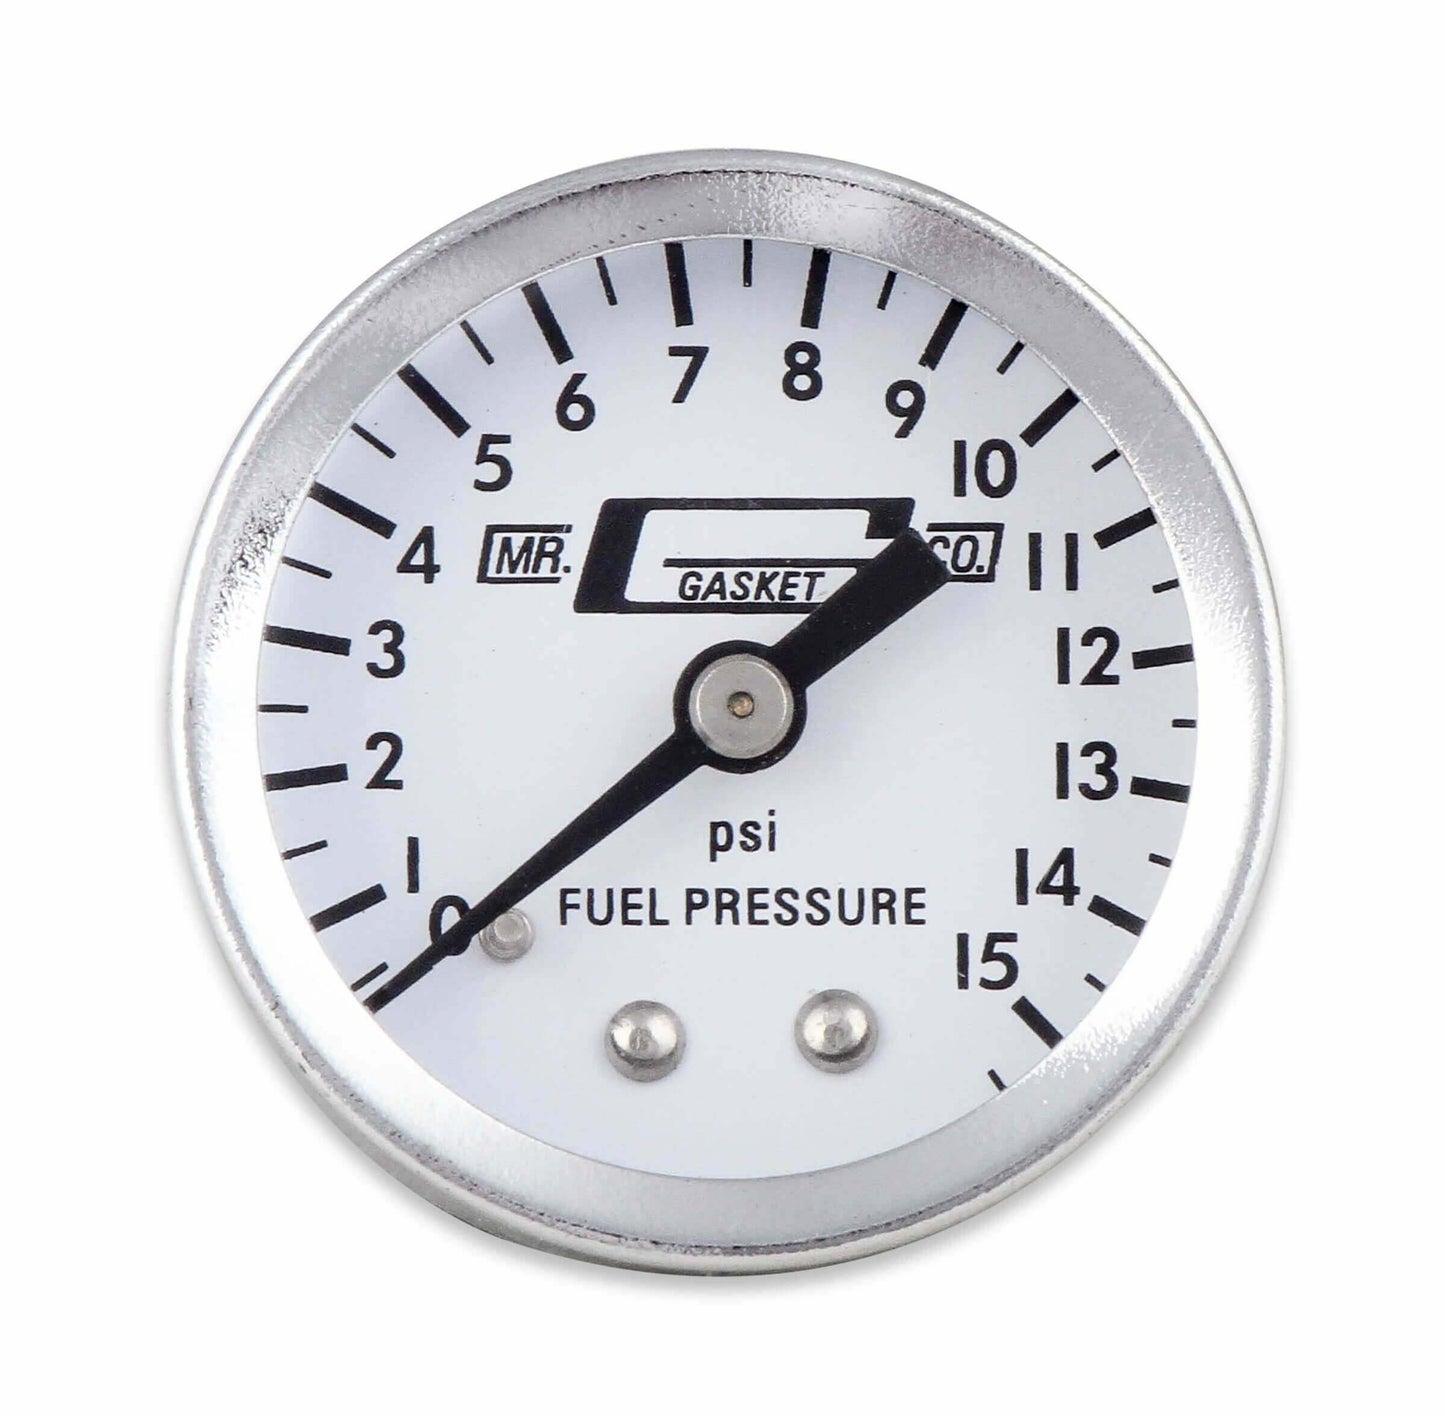 Mr. Gasket Fuel Block with 0-15 PSI Fuel Pressure Gauge - 1560